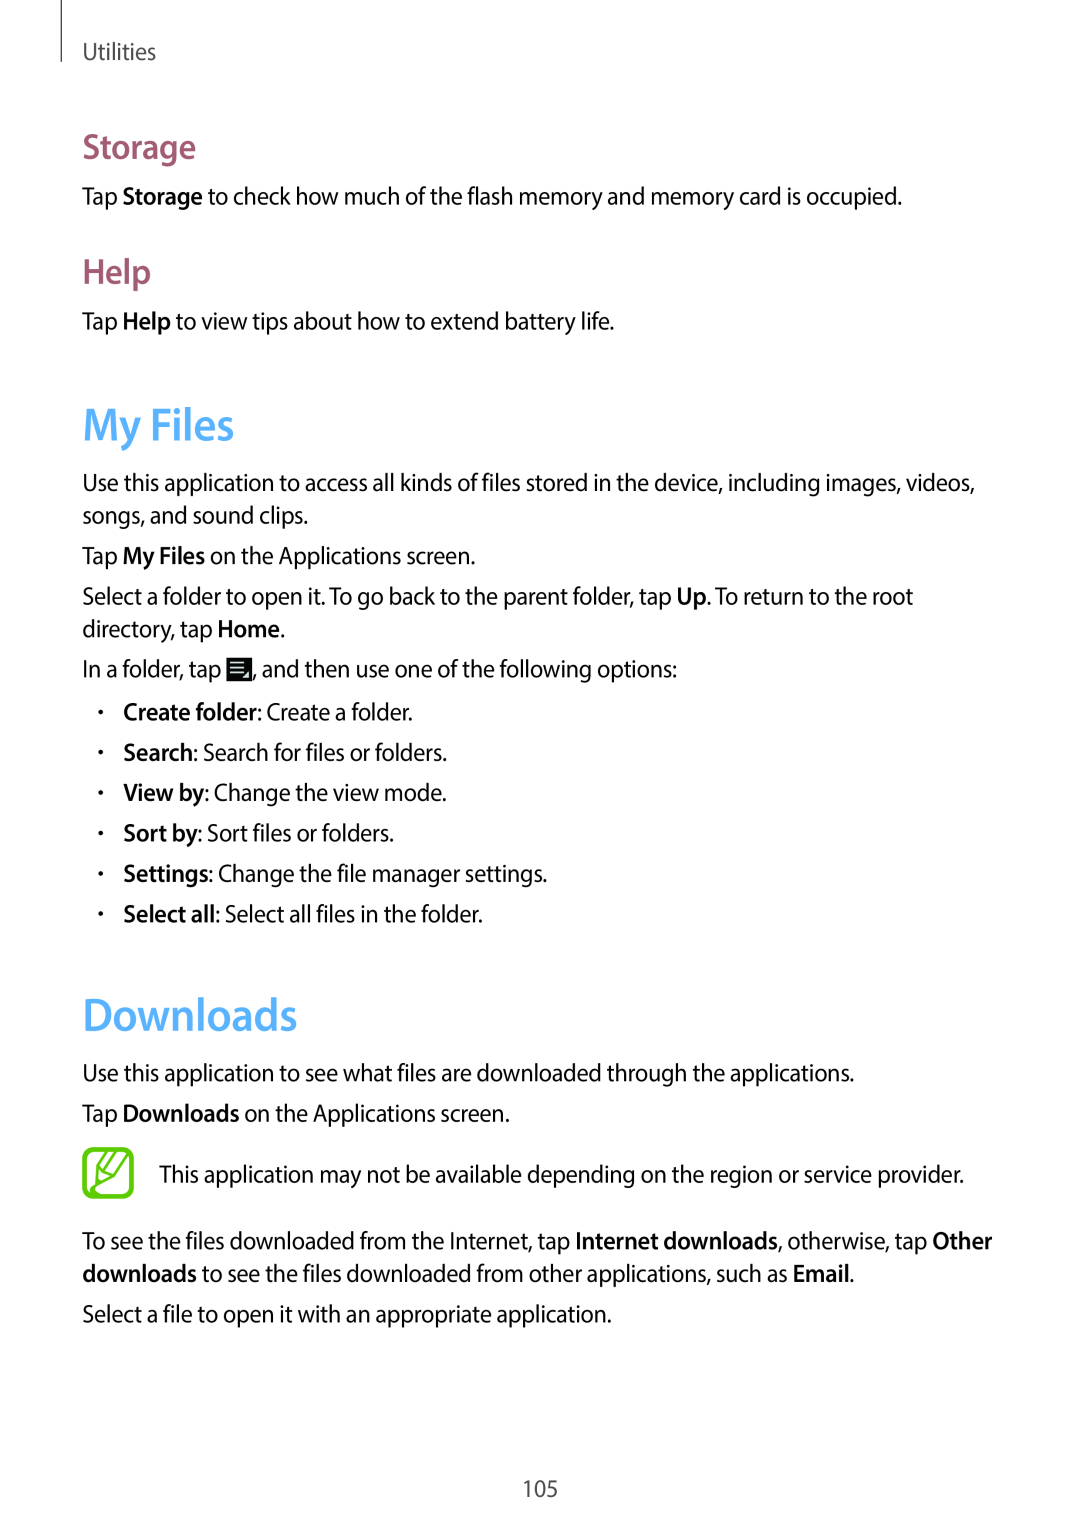 Samsung EK-GC100 user manual My Files, Downloads, Storage, Help, Utilities 